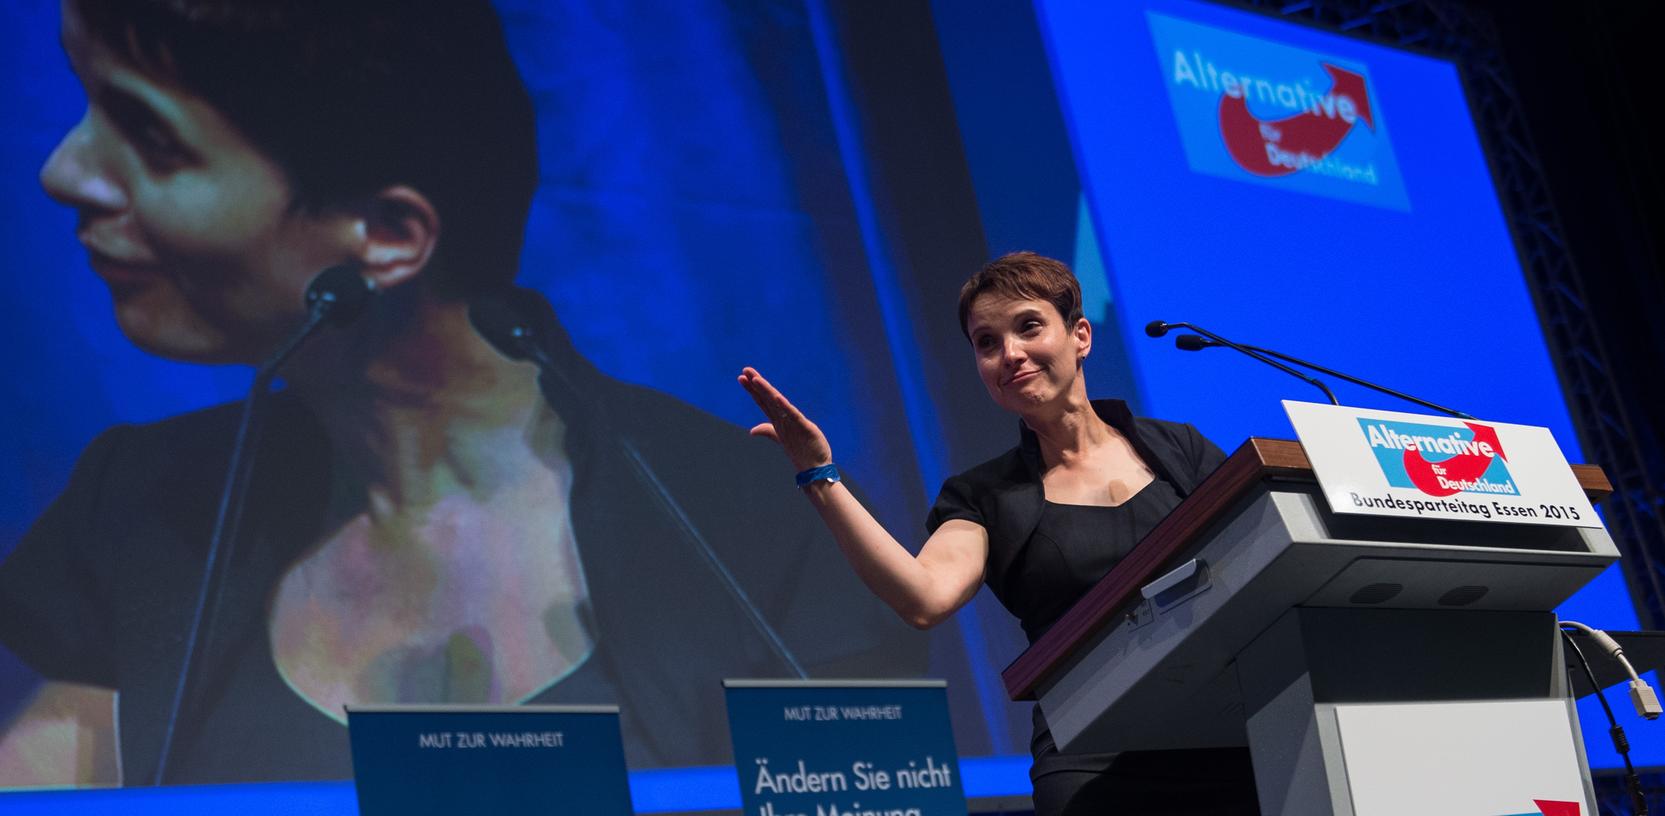 Die neu gewählte AfD-Vorsitzende Frauke Petry spricht auf dem Parteitag der AfD in Essen.